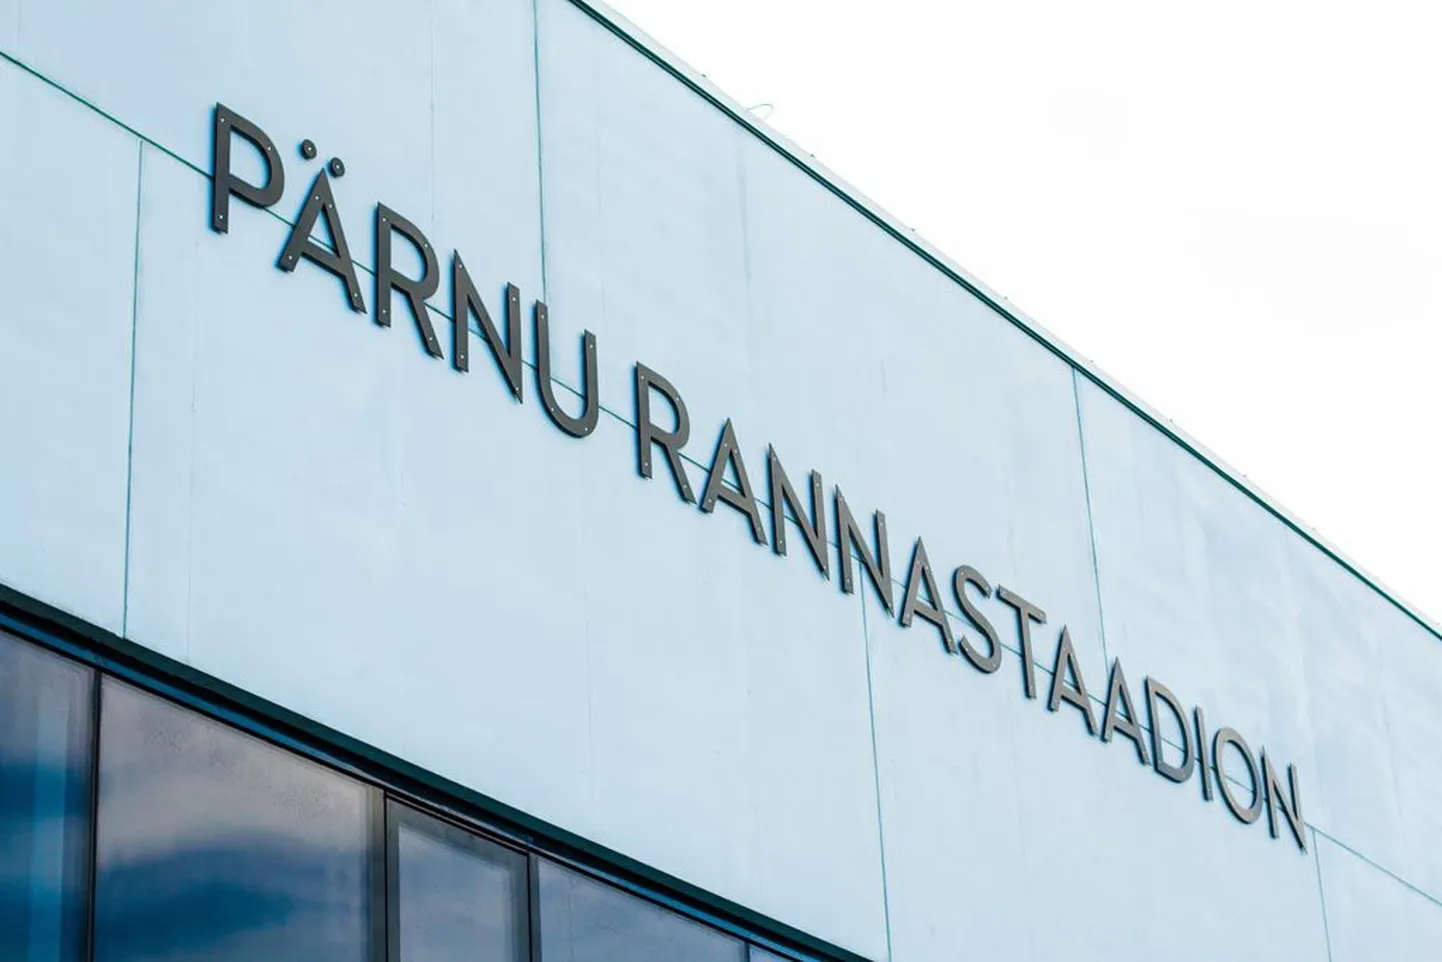 Eesti - Malta maavõistlus Pärnu Rannastaadionil kell 17.